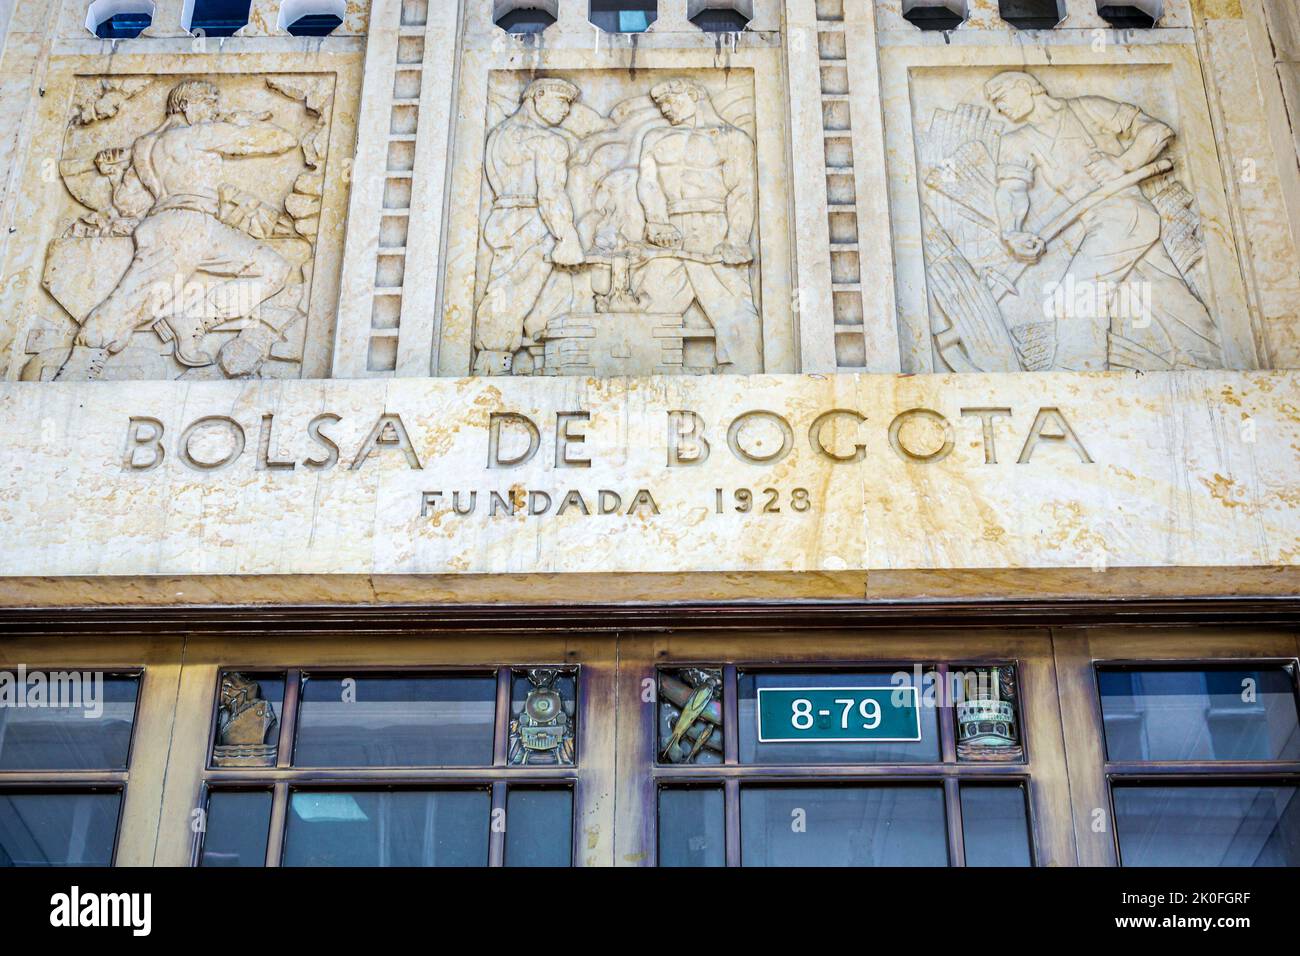 Bogotá Colombia, La Candelaria Centro Histórico centro histórico centro de la ciudad vieja, Bolsa de Bogotá antigua Bolsa fundada 1928 entrada bui Foto de stock